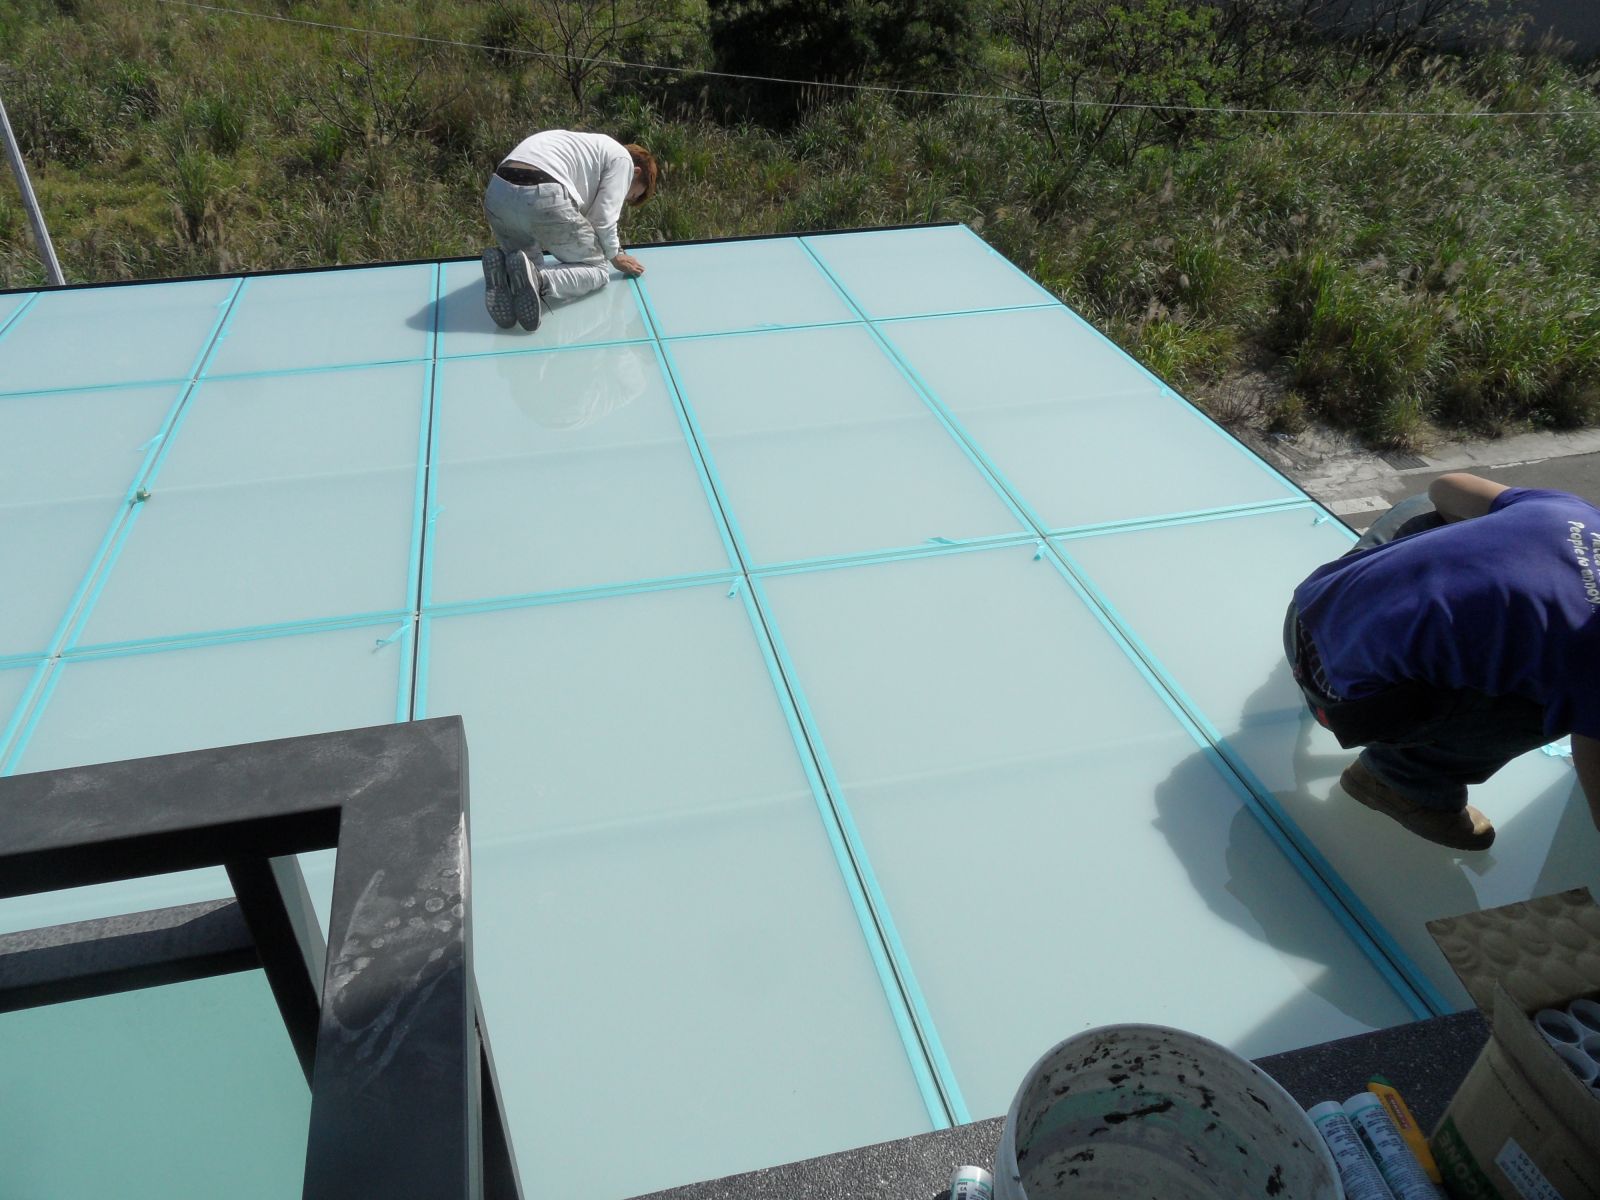 屋頂玻璃採用5+5膠合玻璃,玻璃四邊用紙膠帶黏貼,玻璃與玻璃間伸縮縫灌滿矽利康